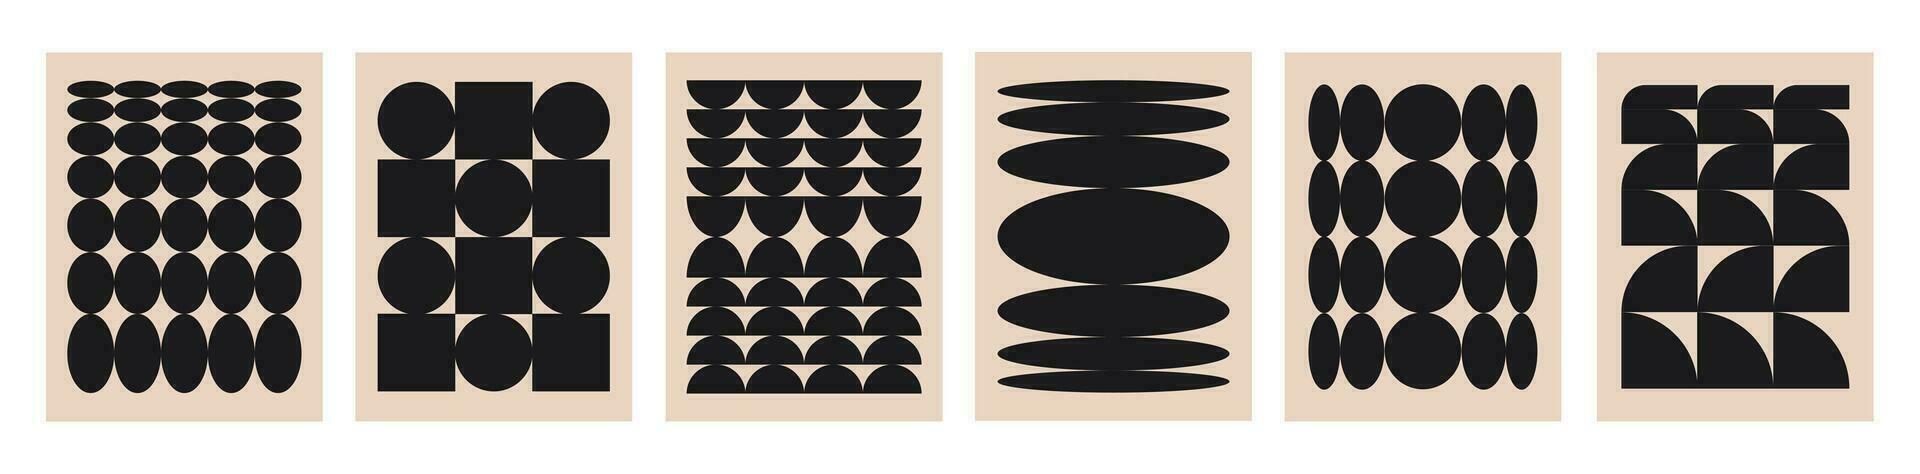 vektor uppsättning av abstrakt svartvit affischer. trendig Brutal samtida kort med geometrisk former